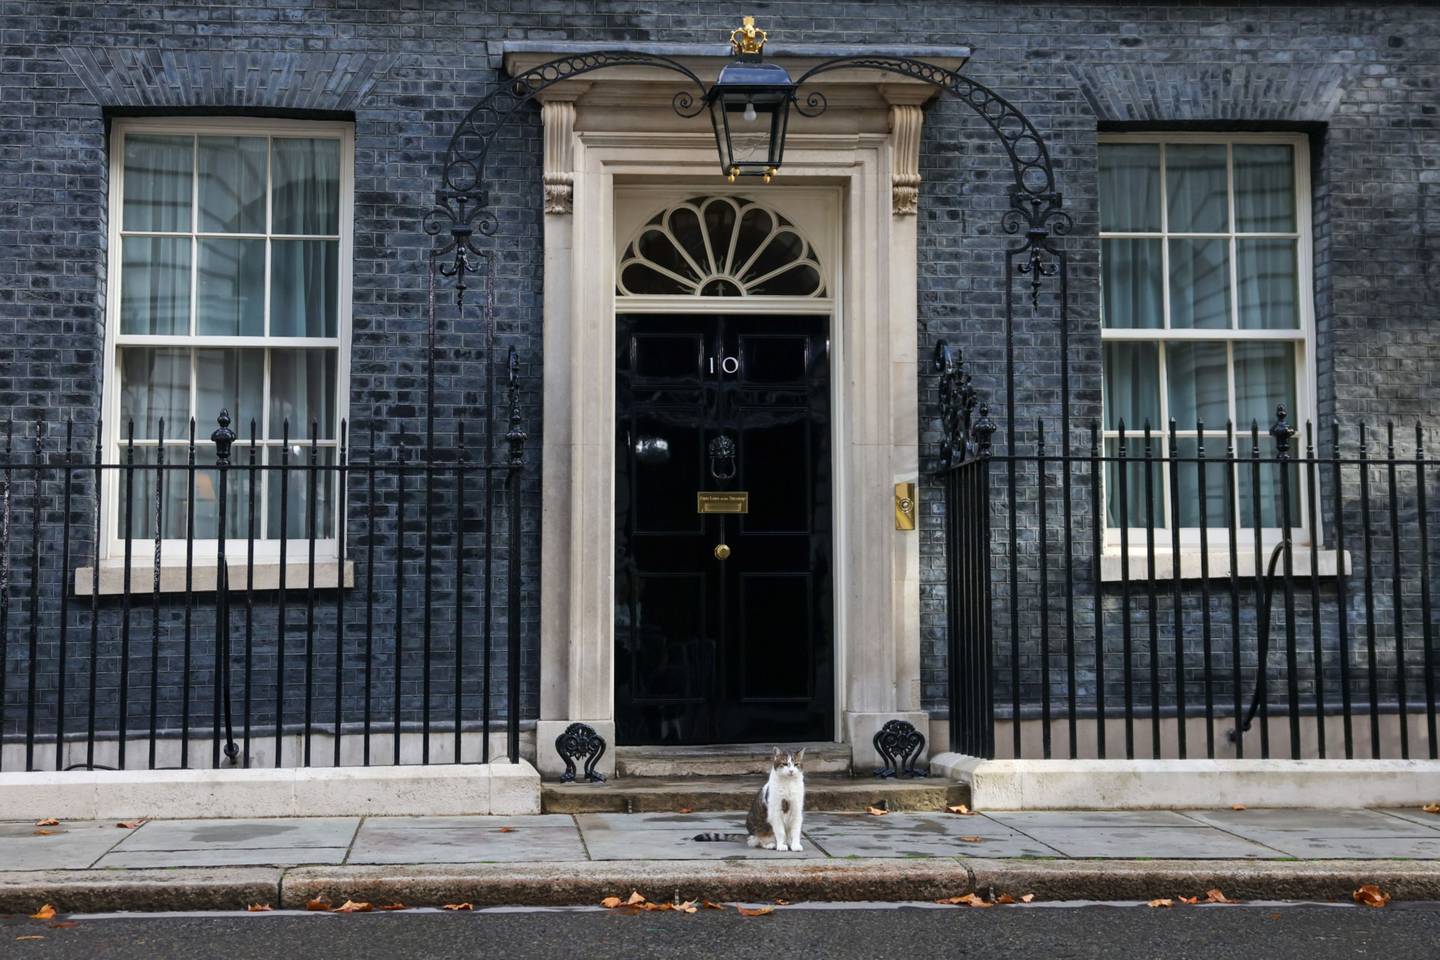 Downing Street, calle de la ciudad de Londres que alberga las residencias oficiales del primer ministro del Reino Unido y del Canciller de la Hacienda